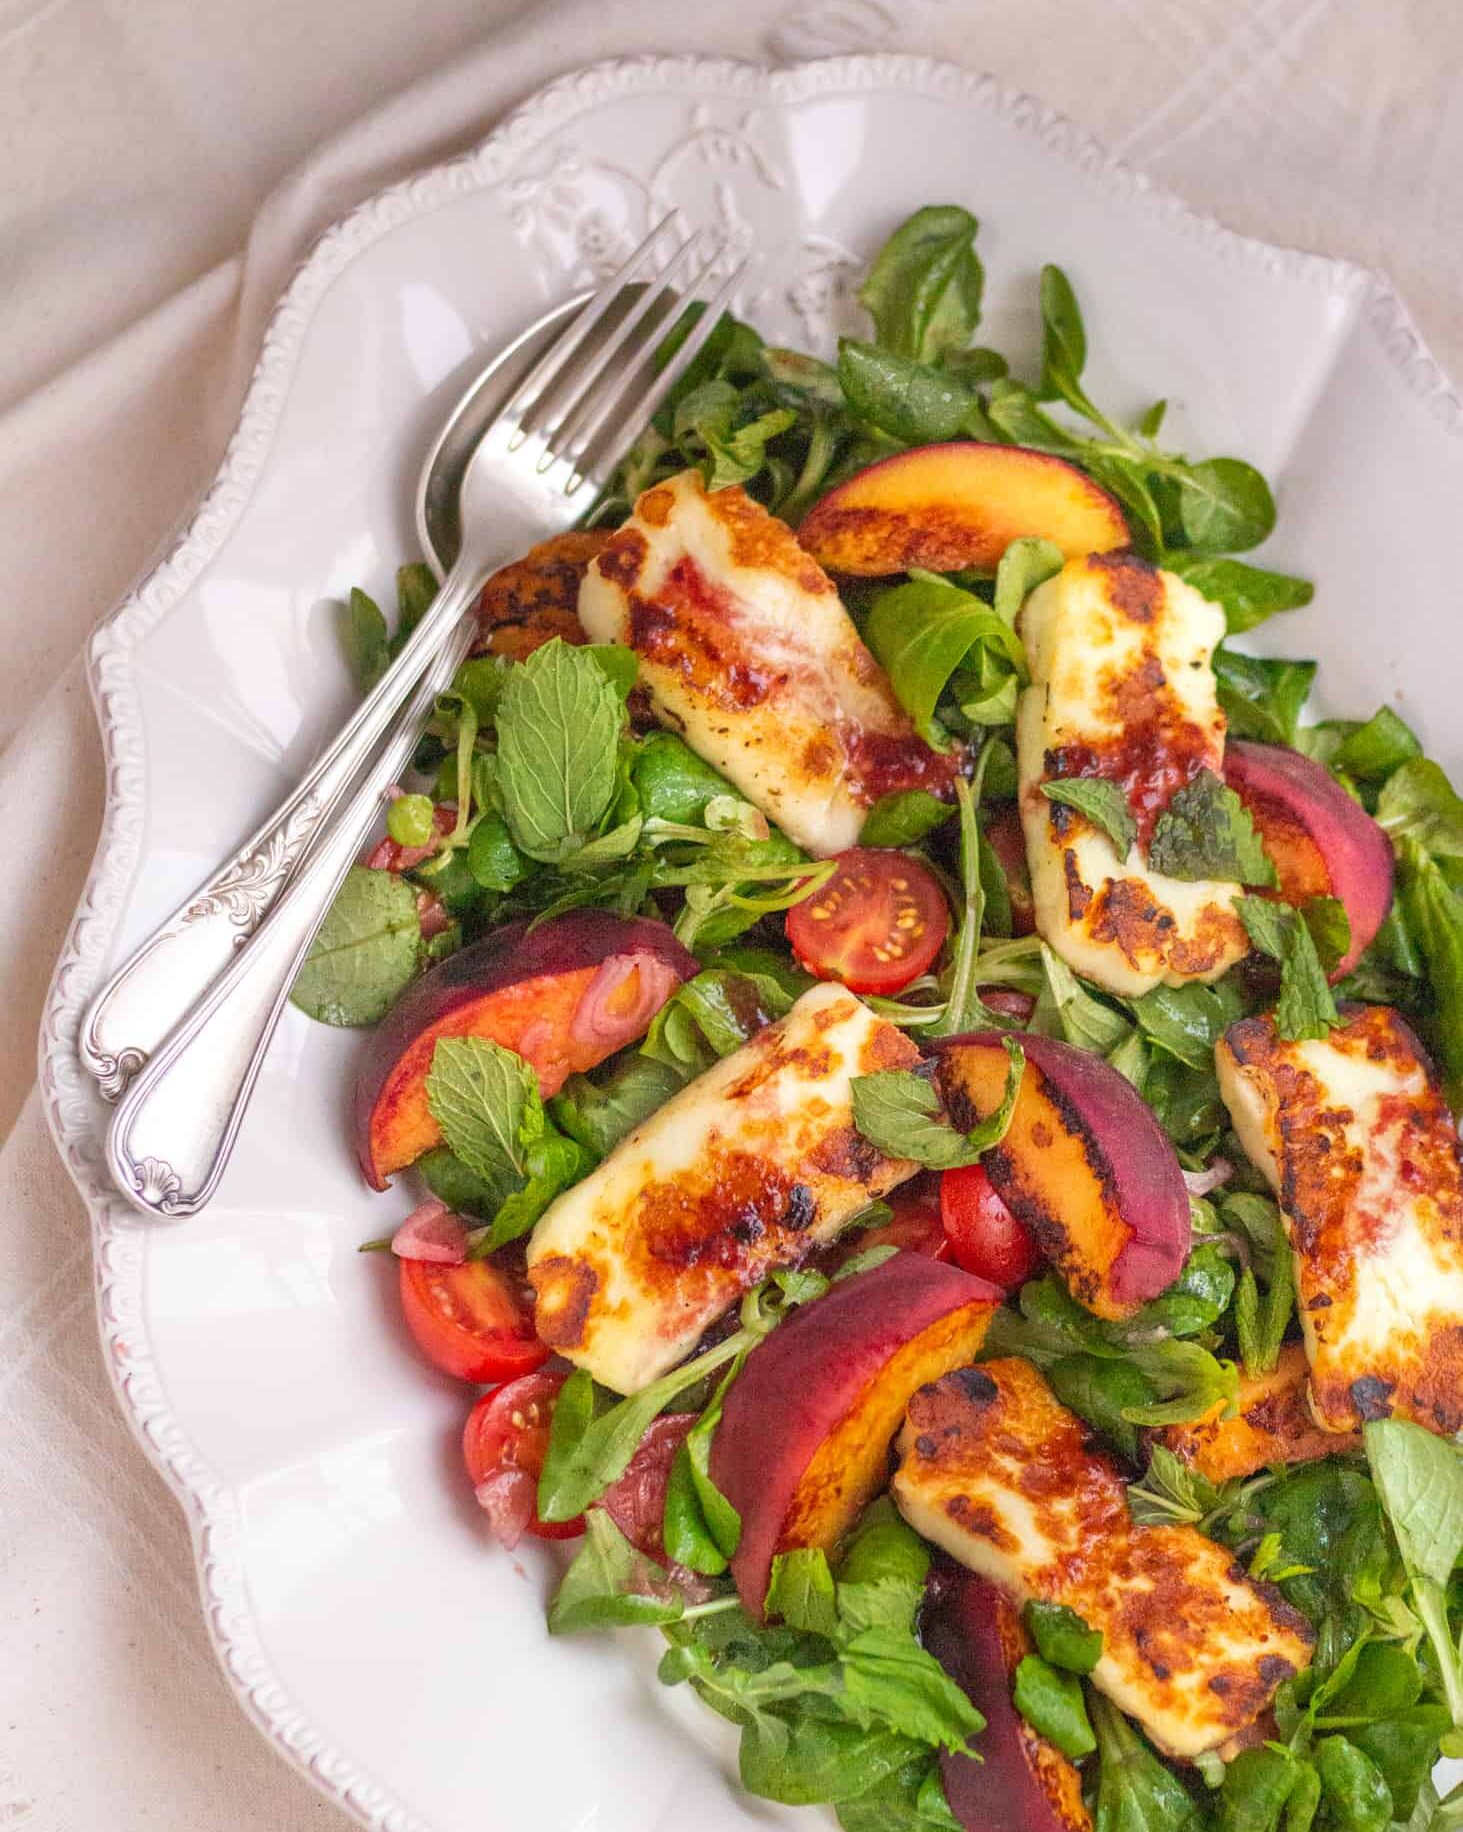 Яркий и освежающий салат с жареным халуми, персиками и ягодным соусом – идеальный вариант летнего обеда или ужина.